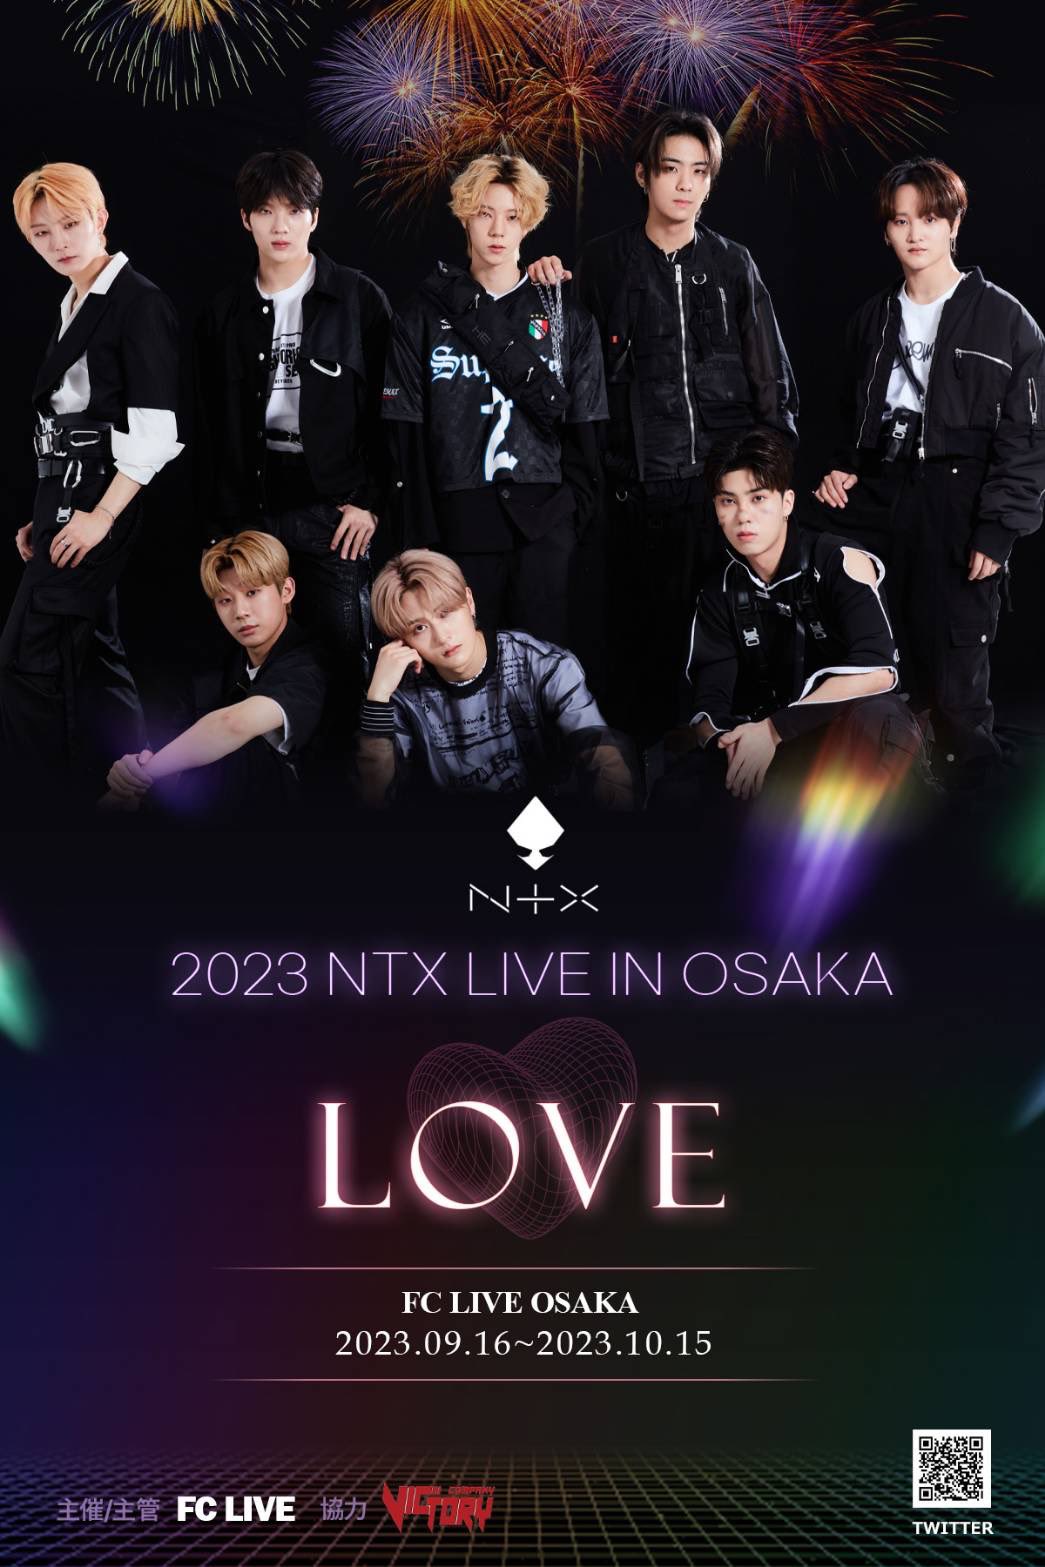 2023 NTX LIVE IN OSAKA "LOVE"